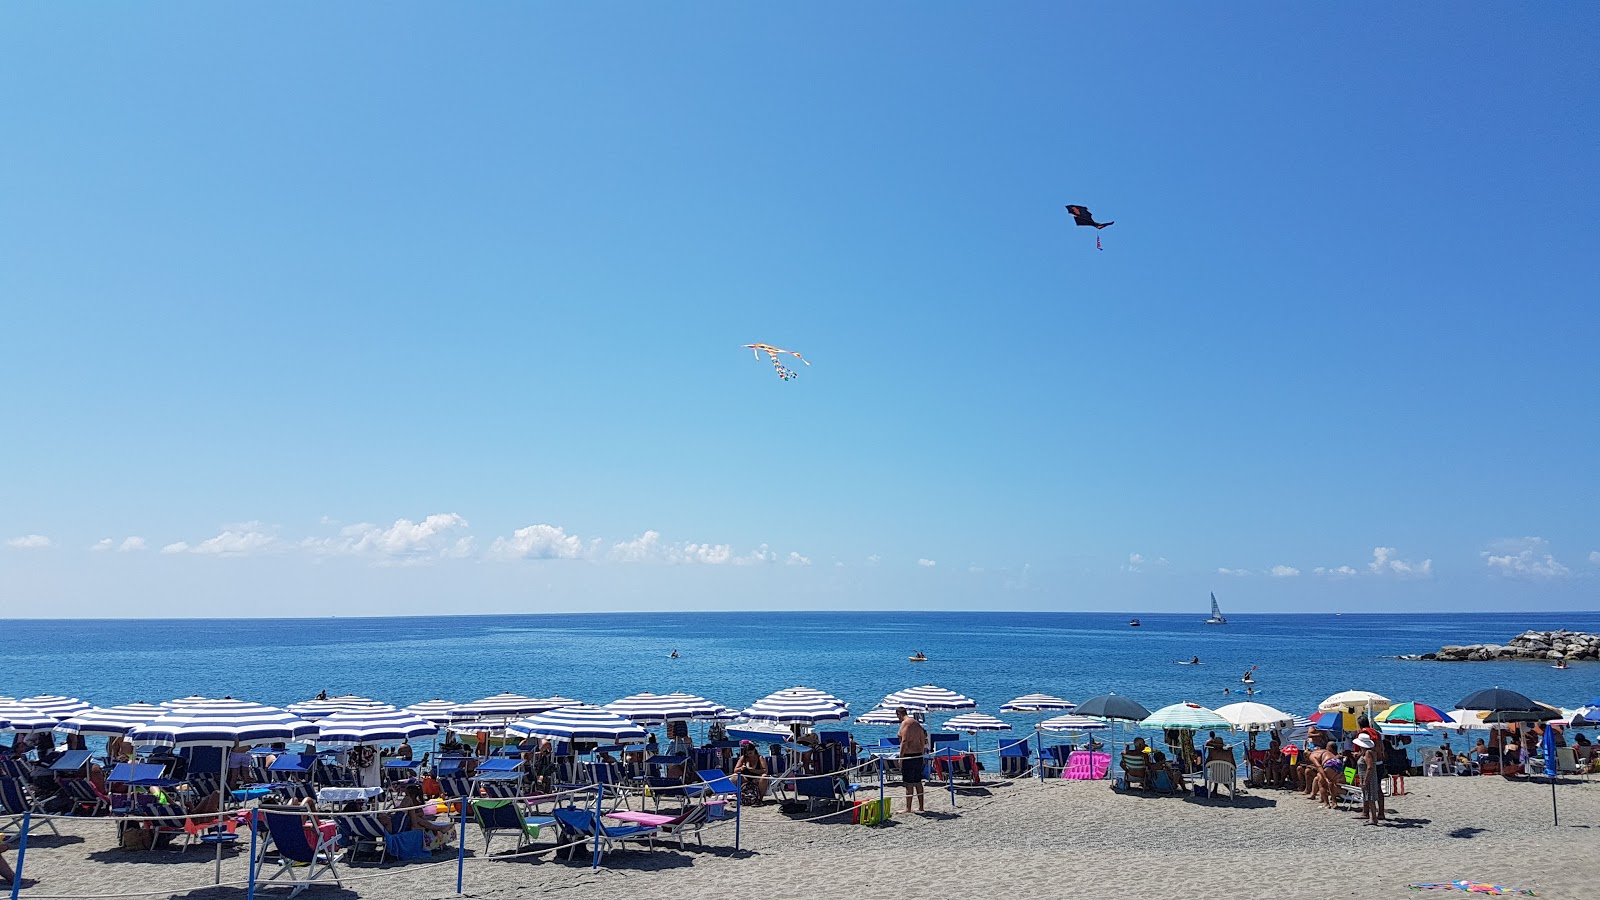 Cittadella del Capo beach'in fotoğrafı orta koylar ile birlikte